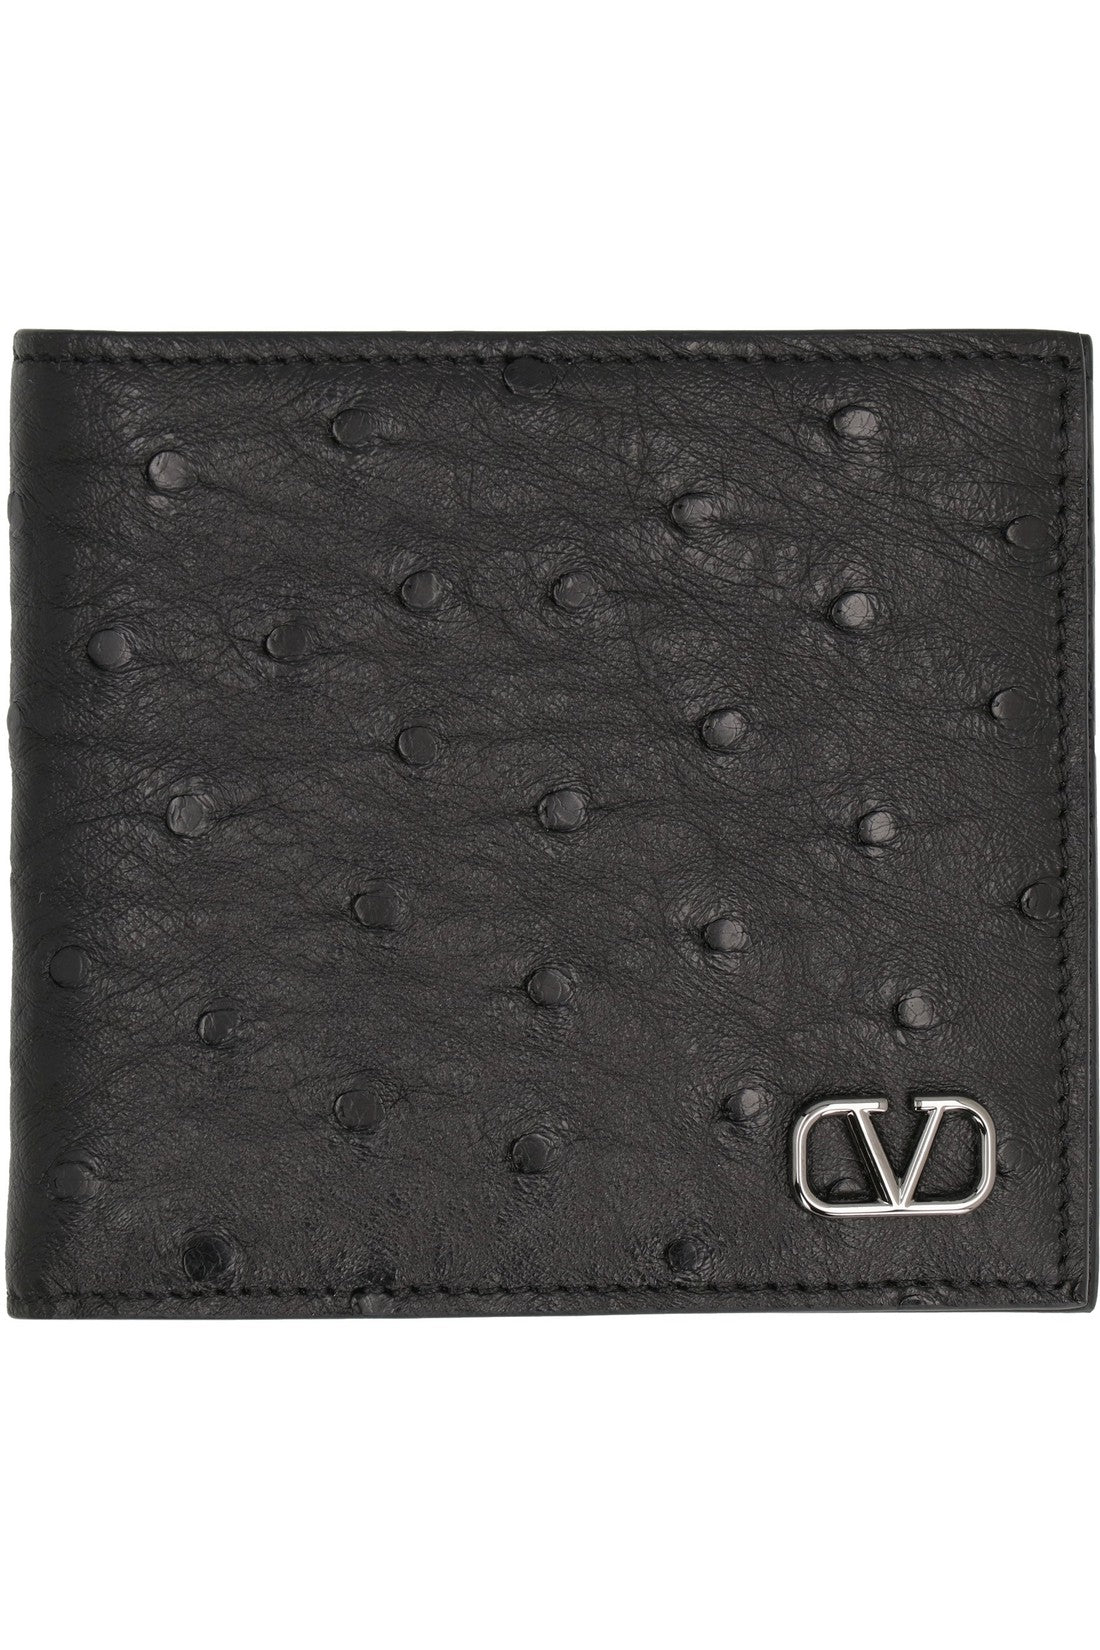 Valentino-OUTLET-SALE-Valentino Garavani - Leather wallet-ARCHIVIST